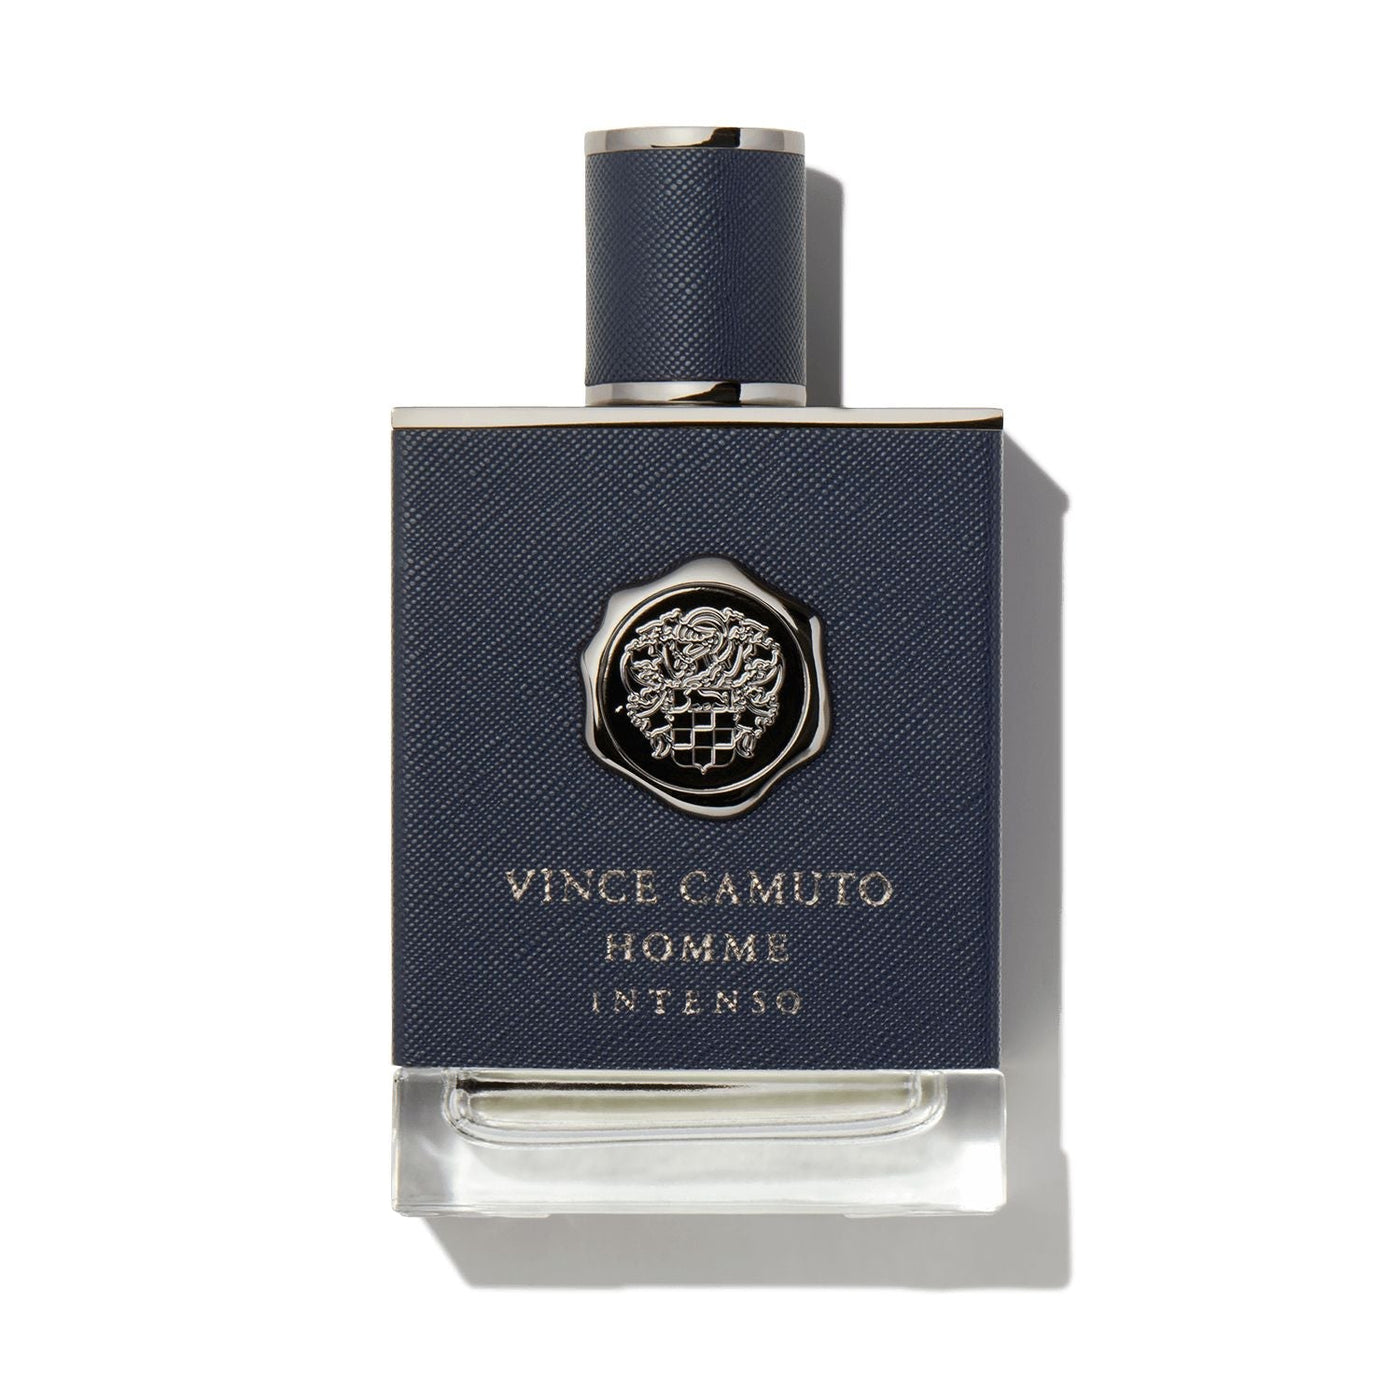 Vince Camuto Homme Intenso For Men Eau De Parfum 100Ml